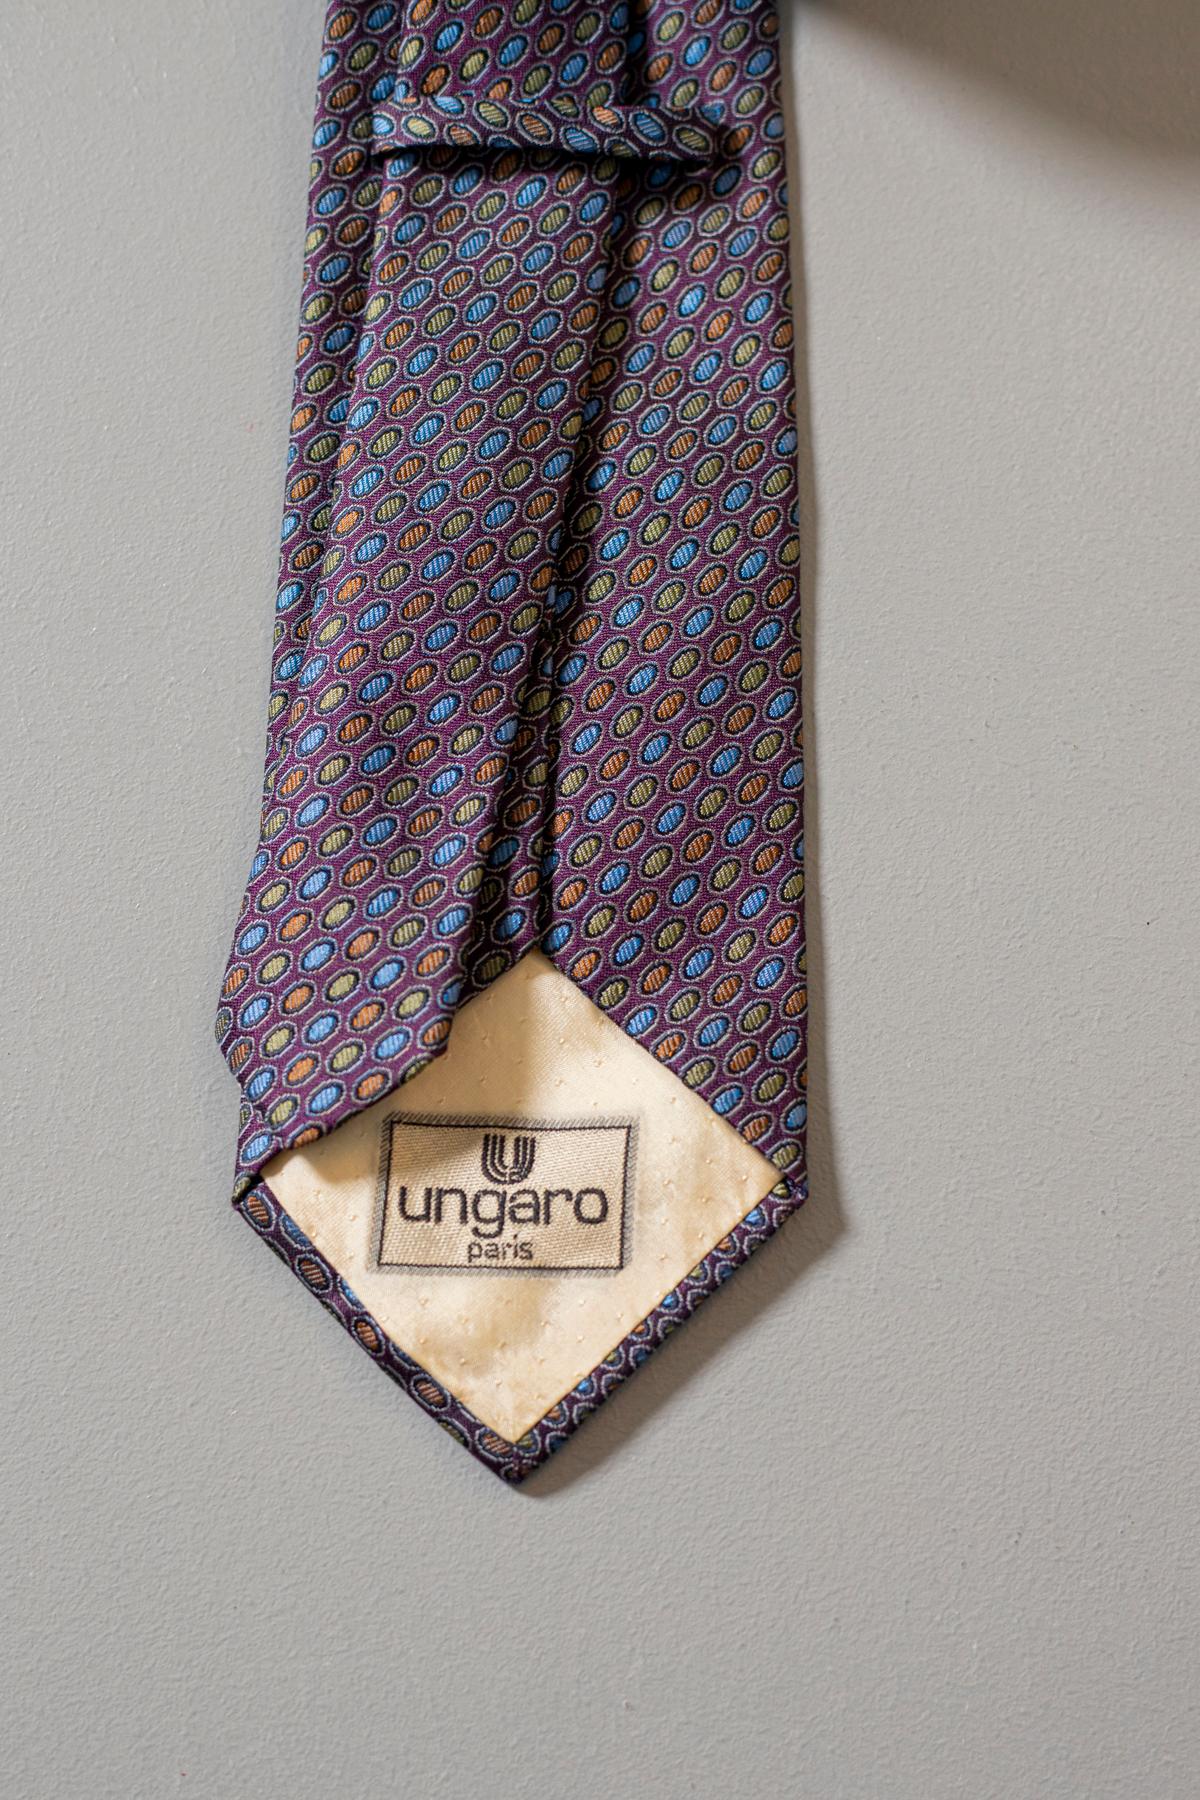 Élégante et classique, cette cravate conçue par Ungaro est fabriquée en soie. Décoré de petits points de couleur sur un fond violet foncé. Avec un design classique et raffiné, c'est l'accessoire parfait pour un entretien d'embauche pour rendre votre